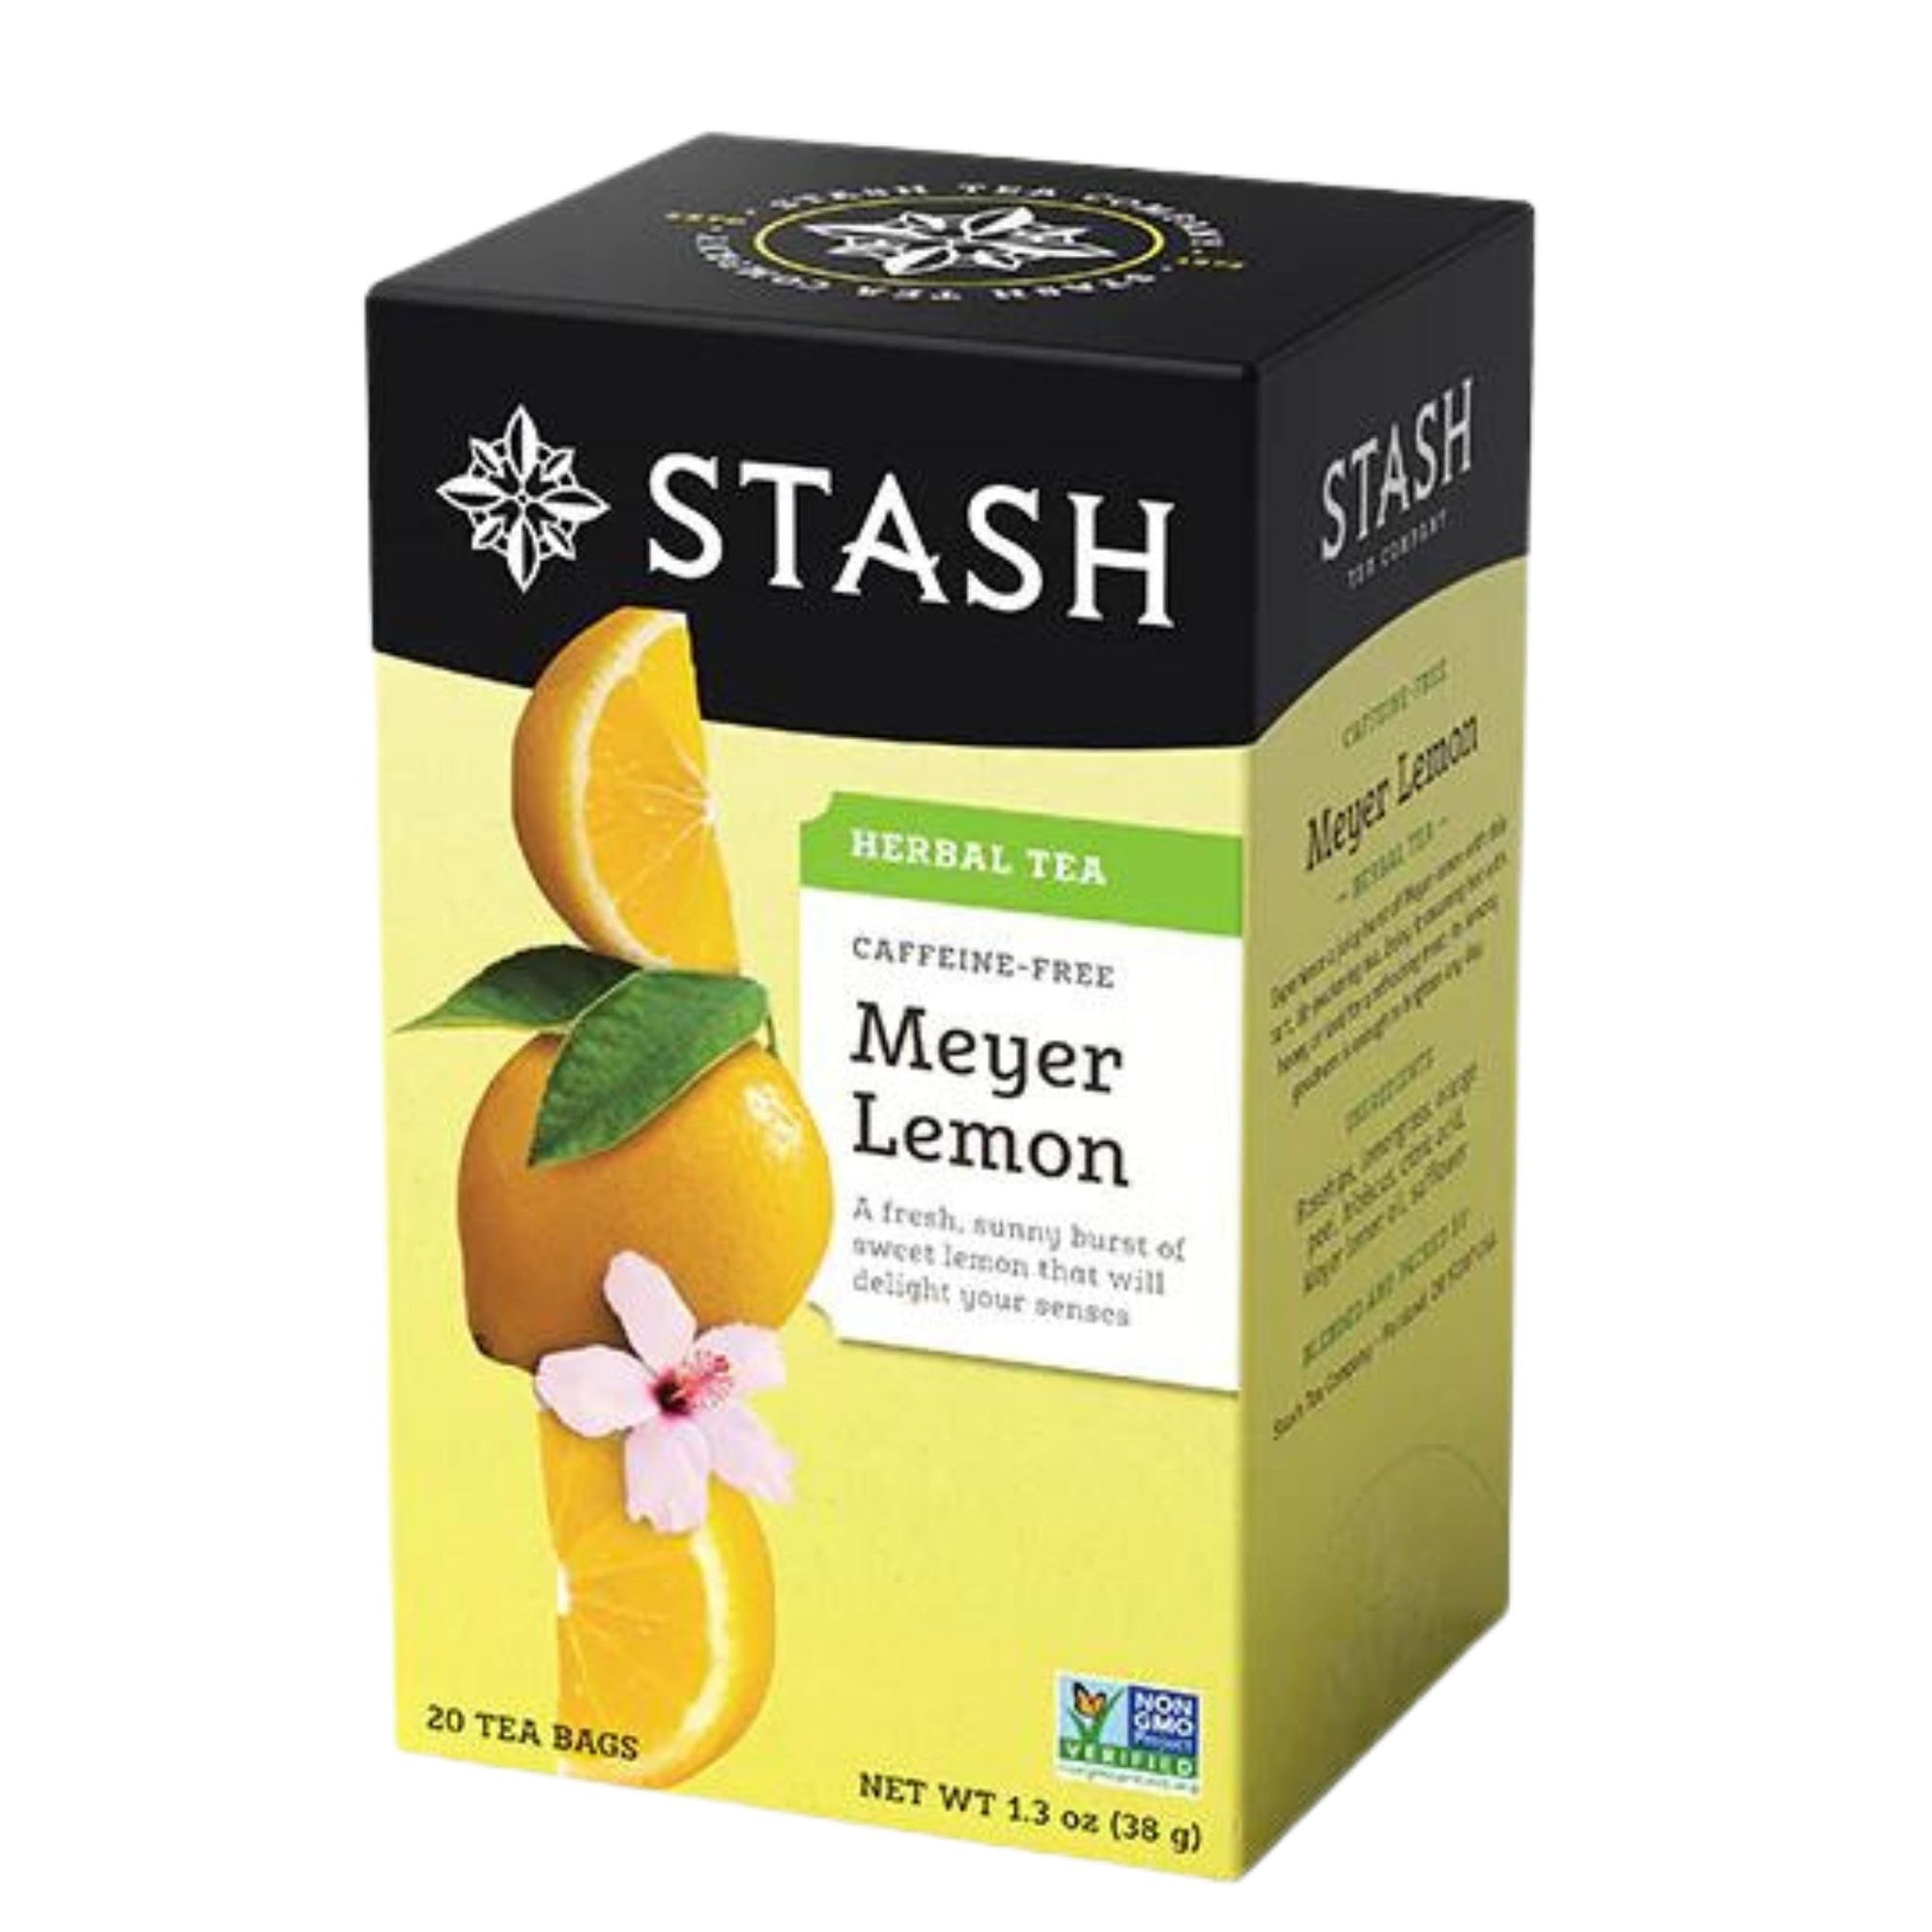 Stash Meyer Lemon Herbal Tea - 20 tea bags in a box - a fresh, sunny burst of sweet lemon that will delight your senses. 